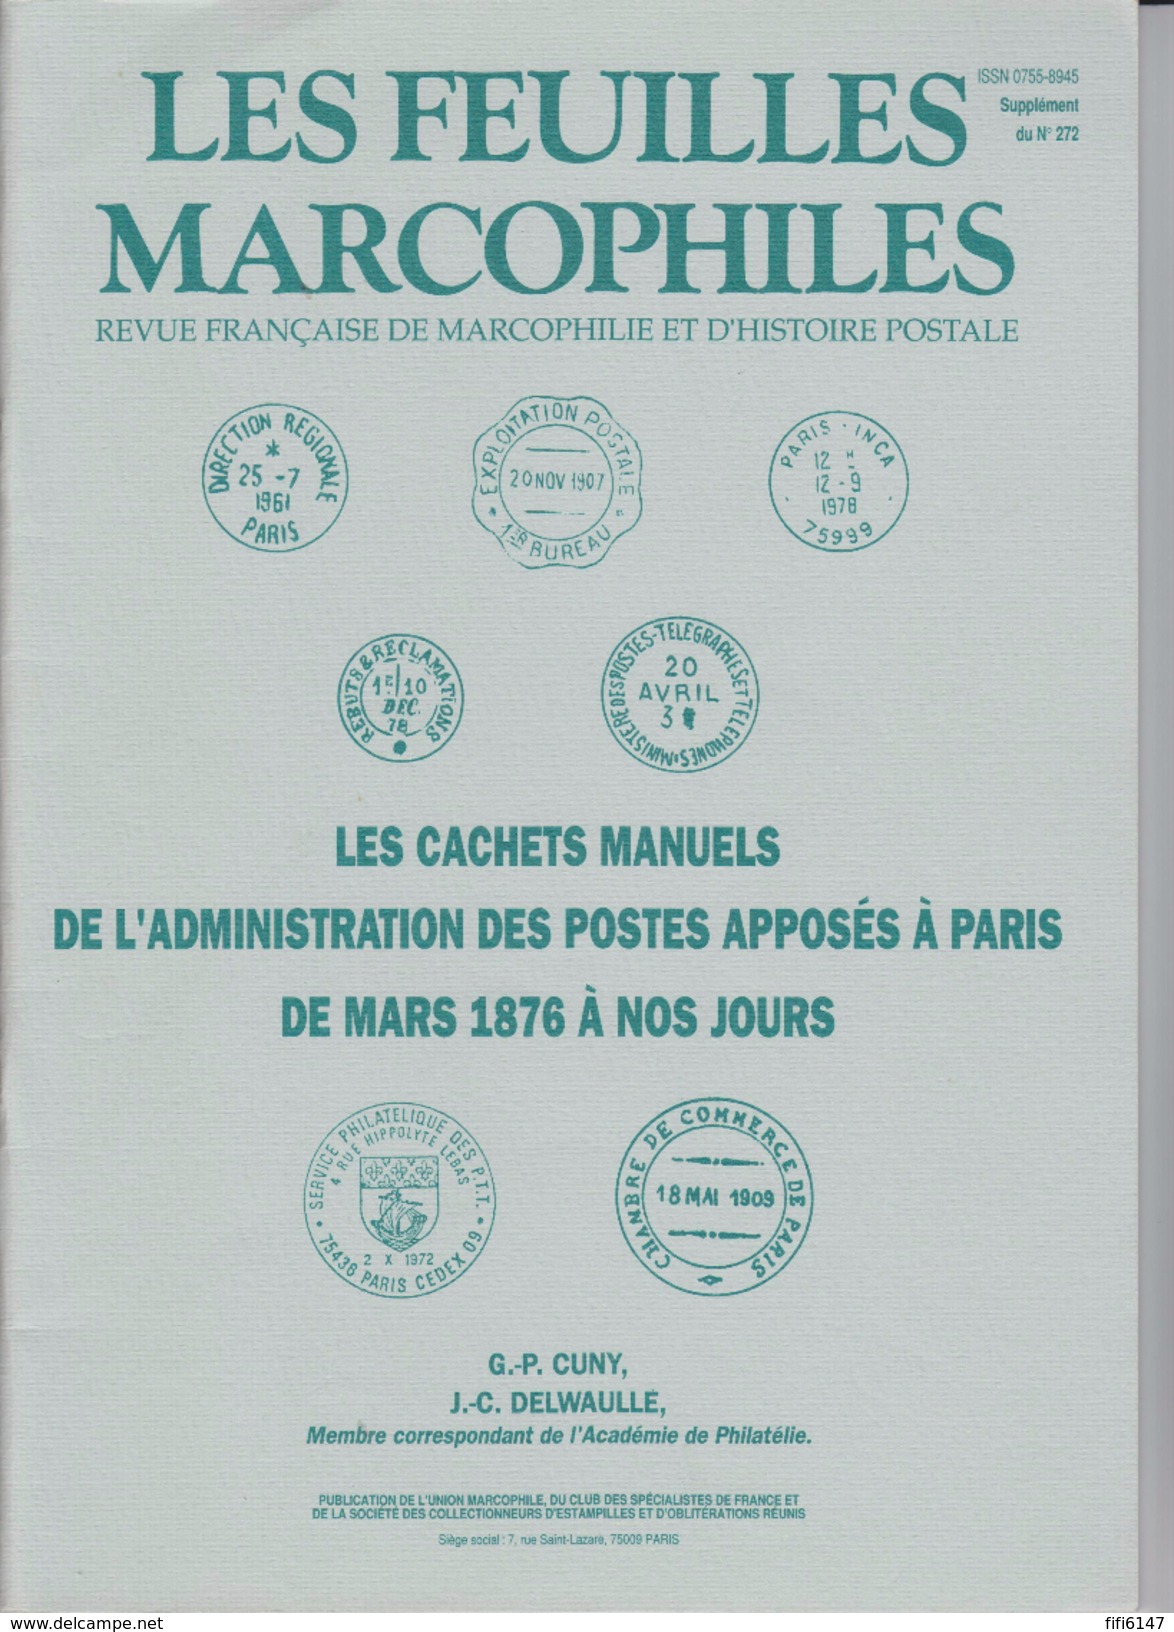 FRANCE--MAGAZINE-LES FEUILLES MARCOPHILES-SUPP. N° 272--1993 -- CACHETS MANUELS DES POSTES A PARIS DE 1876 A NOS JOURS-- - Français (àpd. 1941)